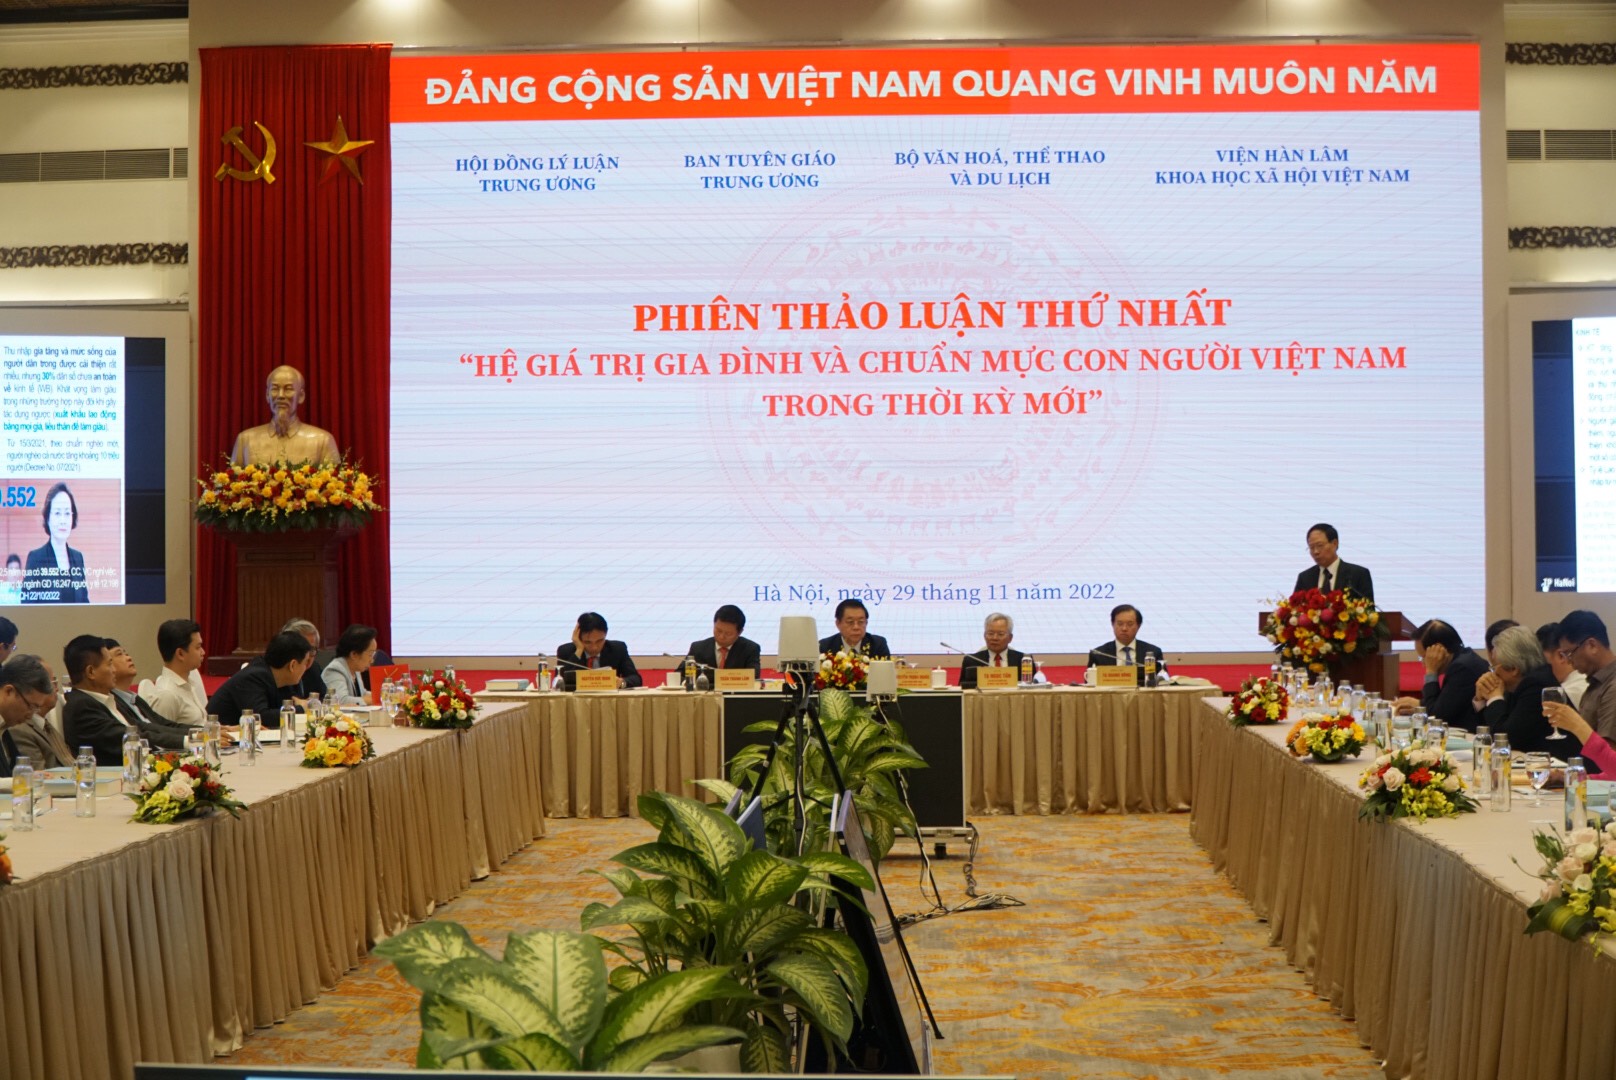 Xây dựng chuẩn mực con người Việt Nam là nhiệm vụ không tách rời với xây dựng hệ giá trị gia đình, hệ giá trị văn hóa và hệ giá trị quốc gia - Ảnh 1.